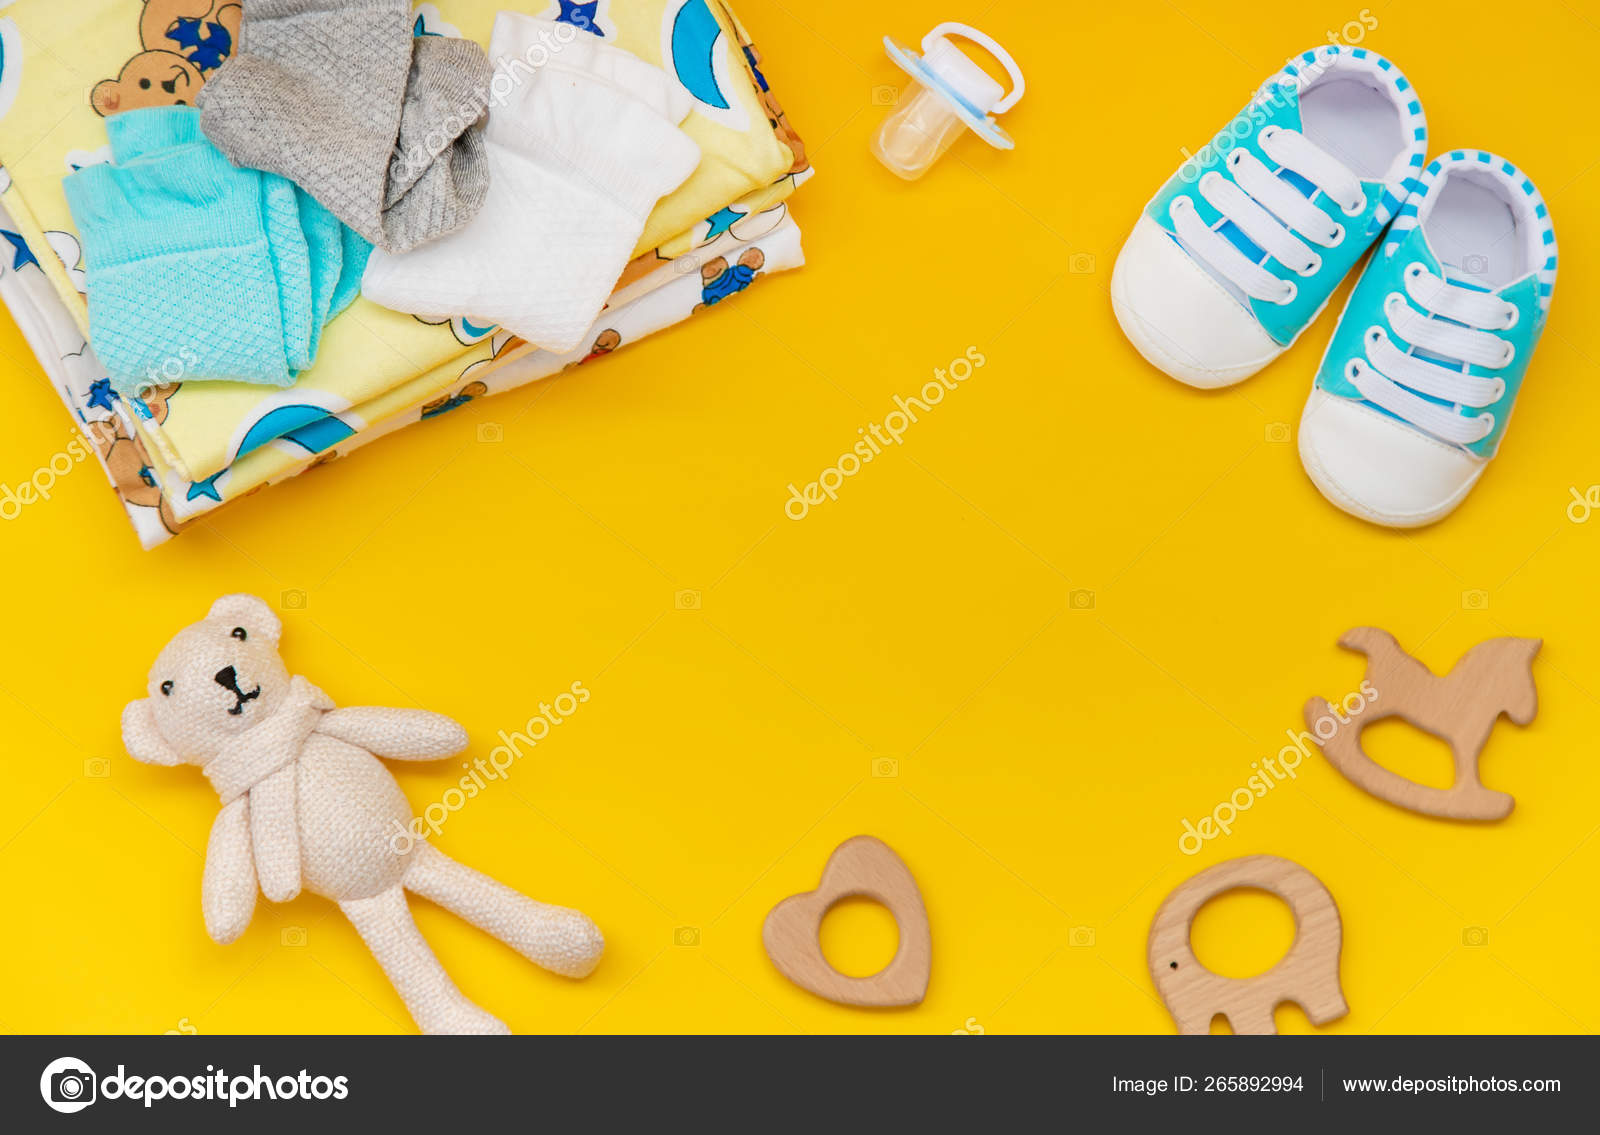 Accesorios para bebés para recién sobre un fondo de color. enfoque selectivo fotografía de © yana-komisarenko@yandex.ru #265892994 | Depositphotos